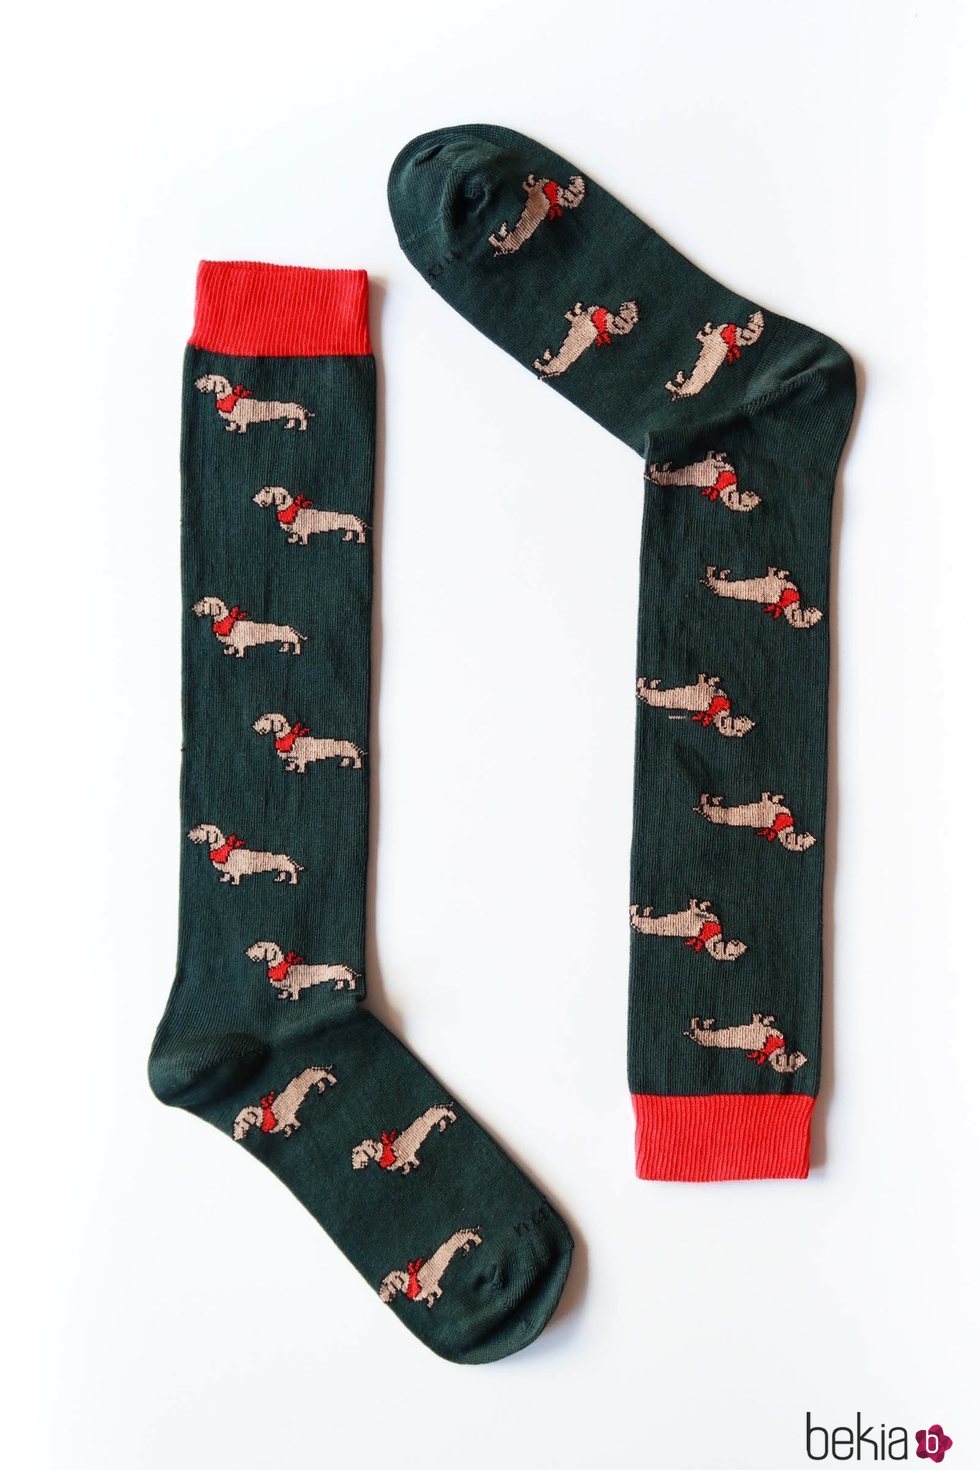 Calcetines con estampado de perros en verde y rojo de Naïve